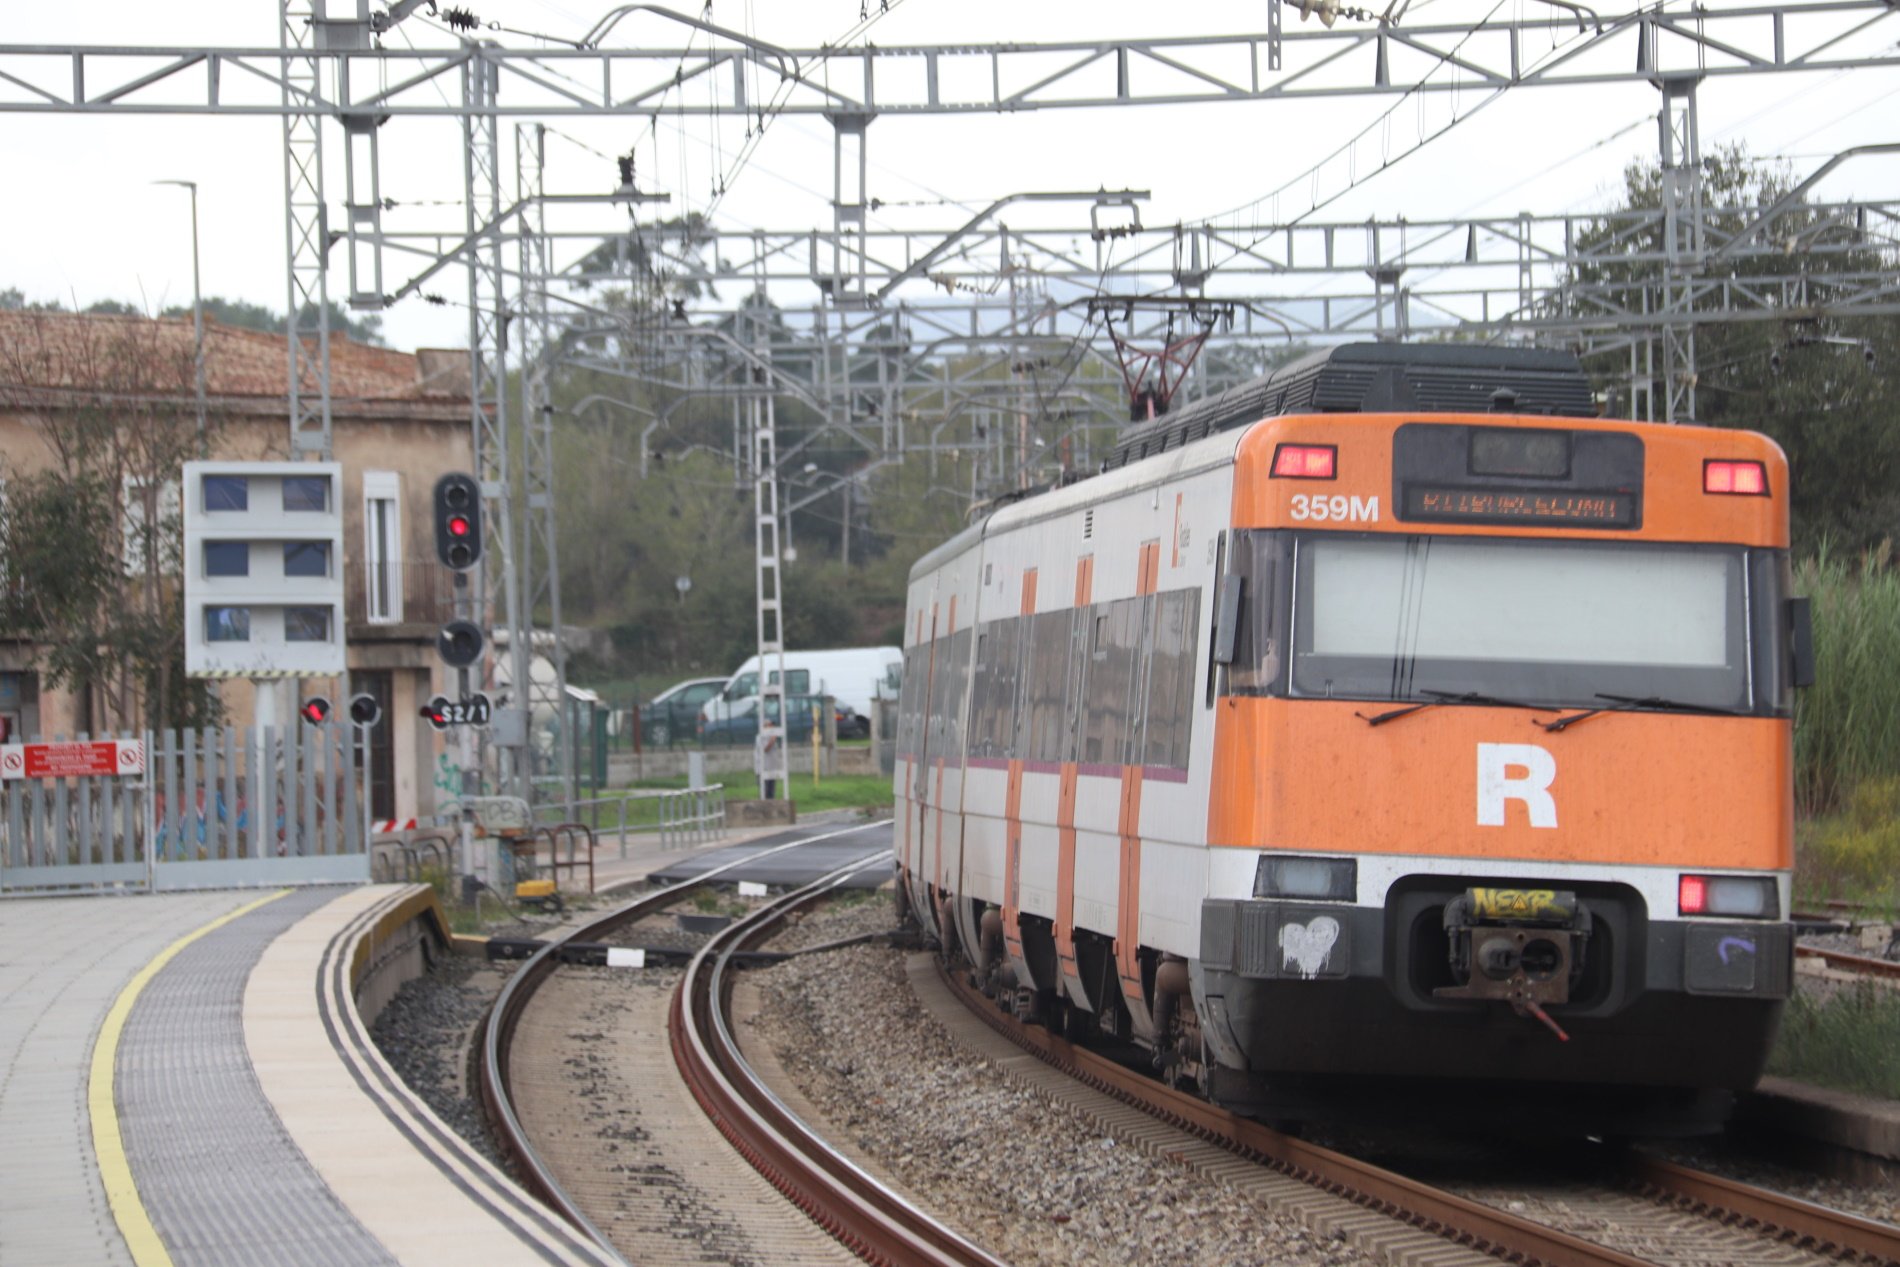 Atrapat un tren de l'R3 entre Torelló i Manlleu amb un centenar de passatgers